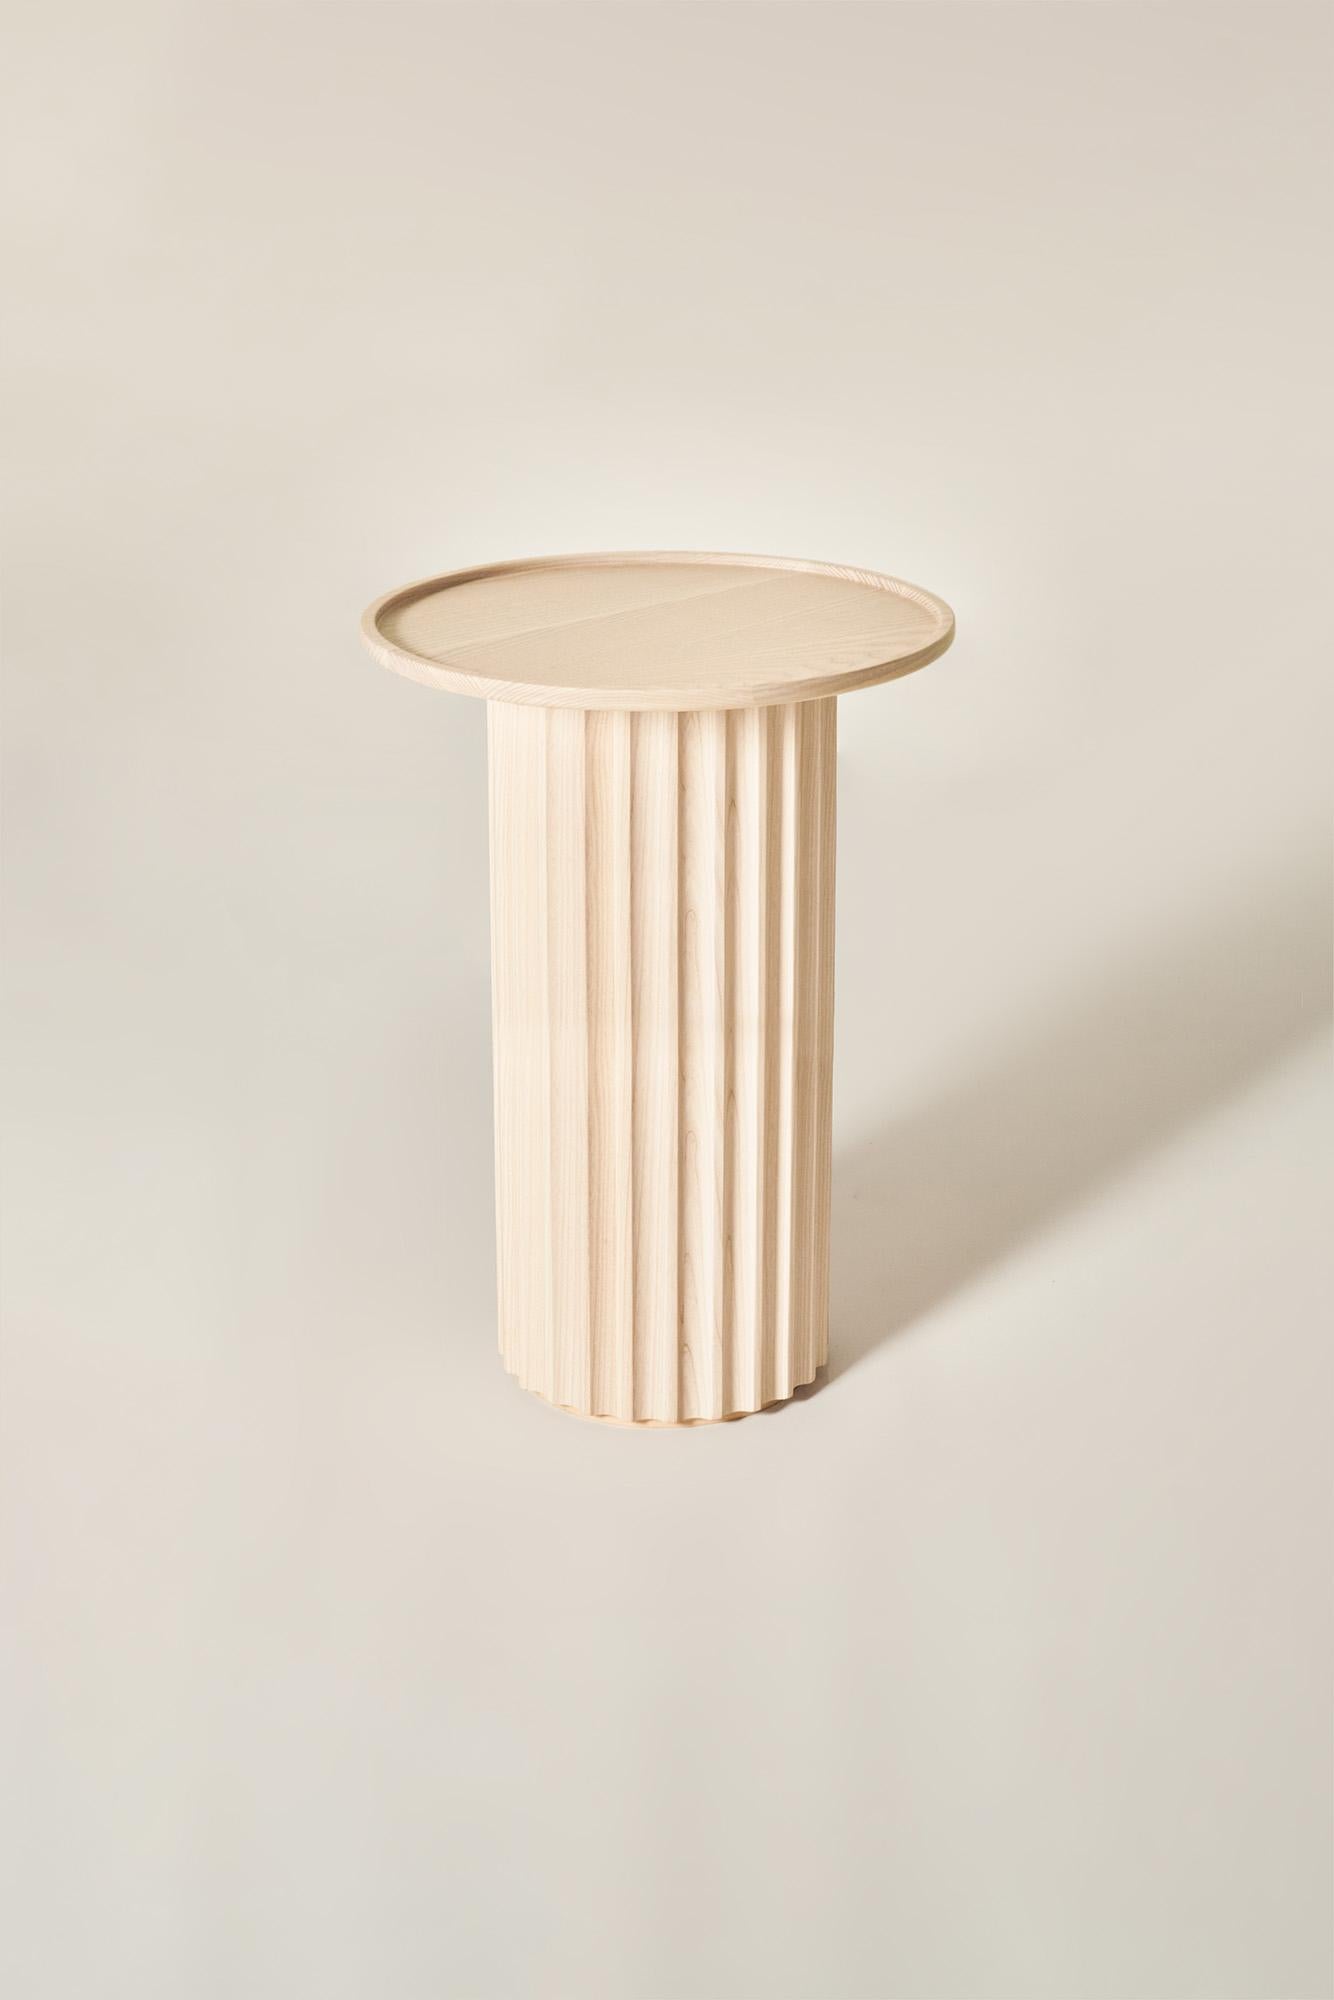 Capitello Solid Wood coffee table, Ash in Natural Finish, Contemporary In New Condition For Sale In Cadeglioppi de Oppeano, VR